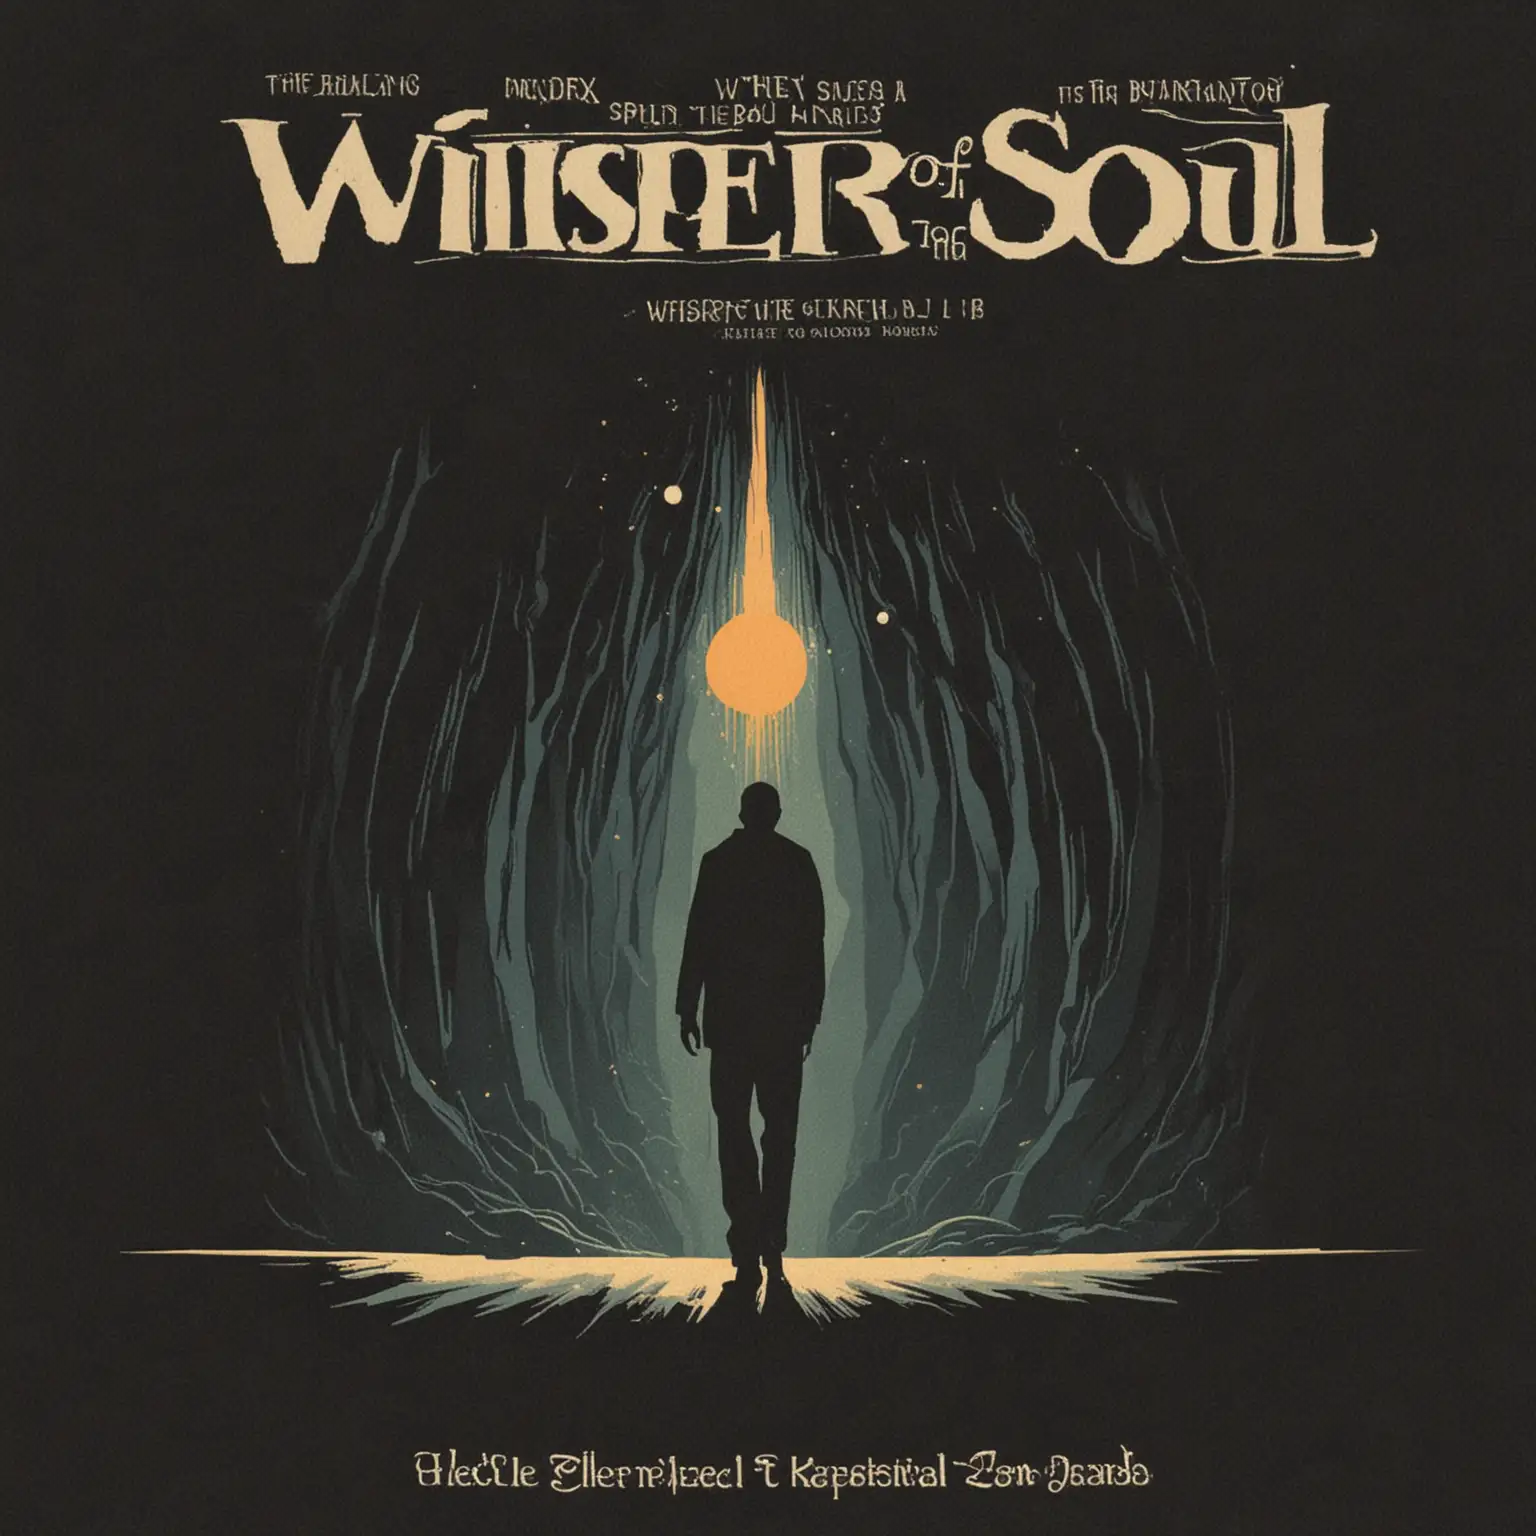 Genera la portada de un single de una banda sonora titulada 'Whispers of the soul', con el estilo de Saul Bass